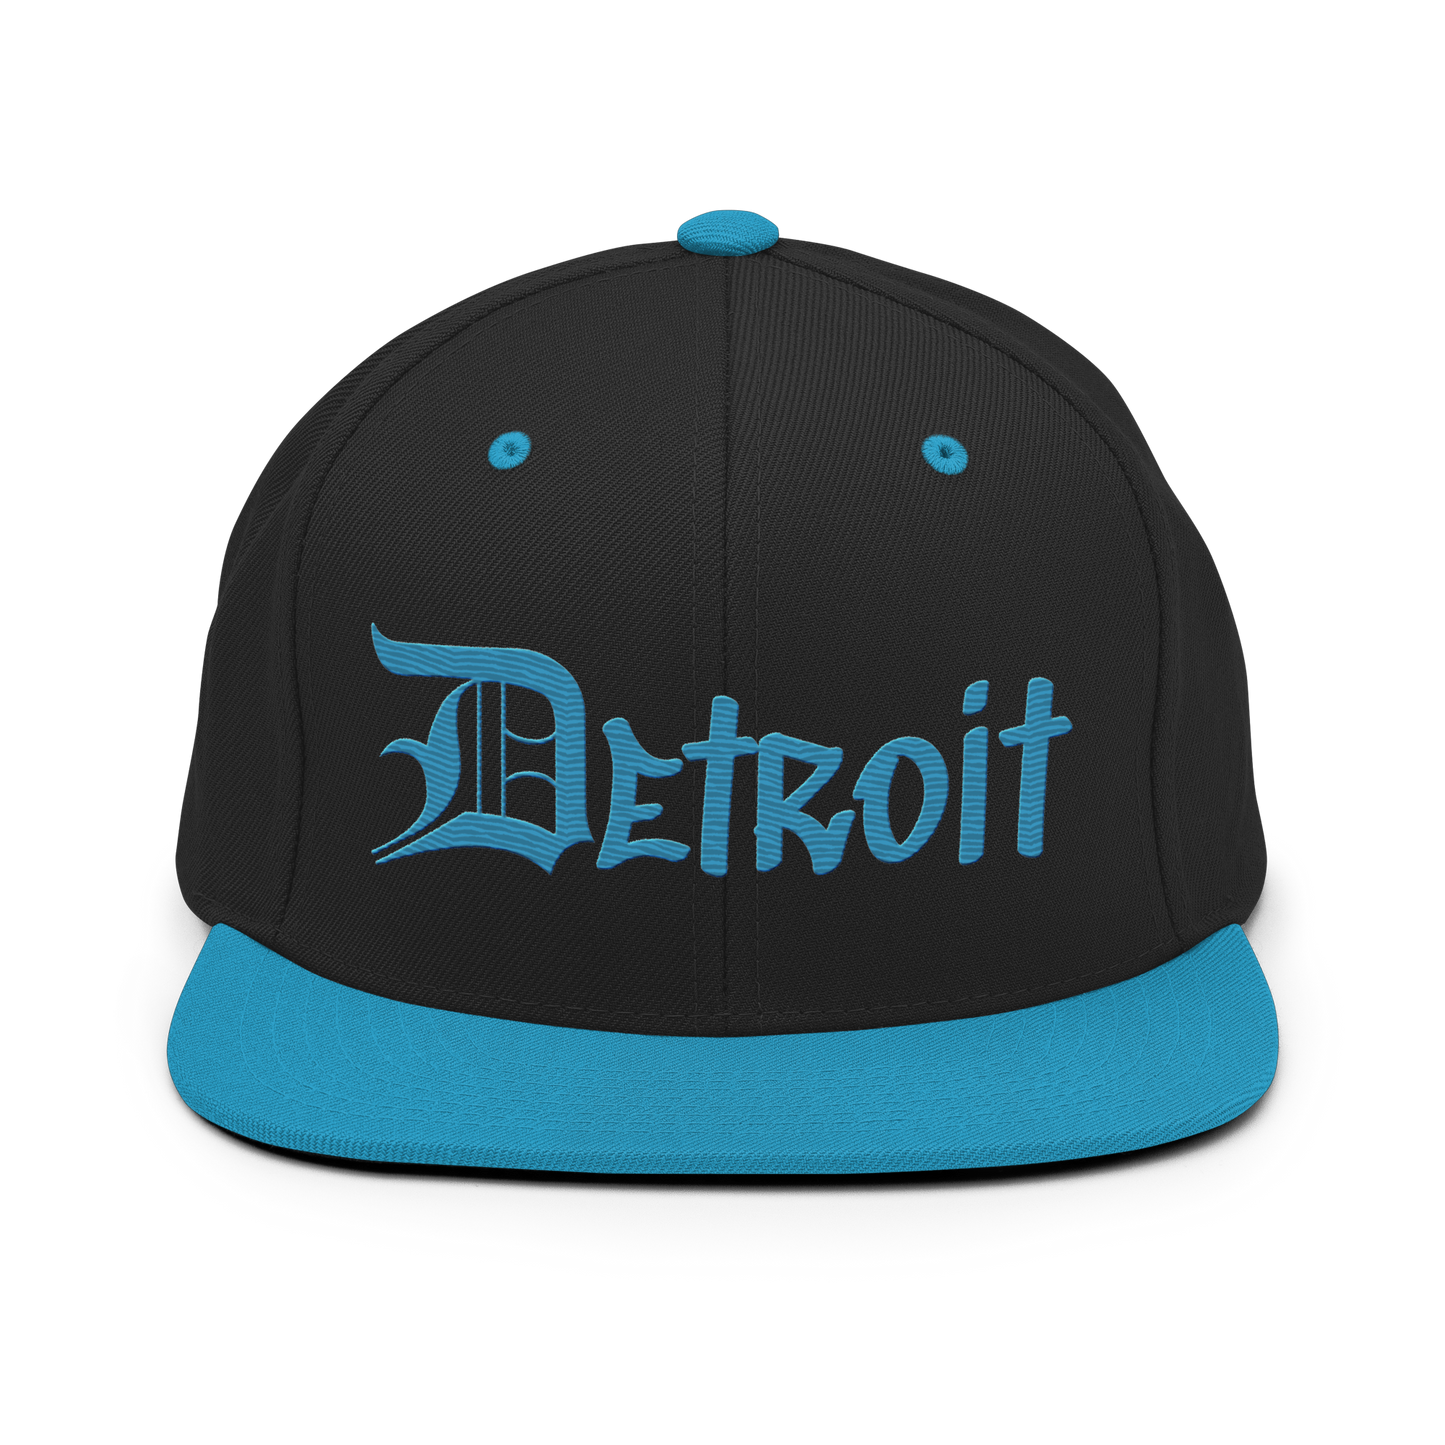 'Detroit' Vintage Snapback (OED Tag Font) | Teal